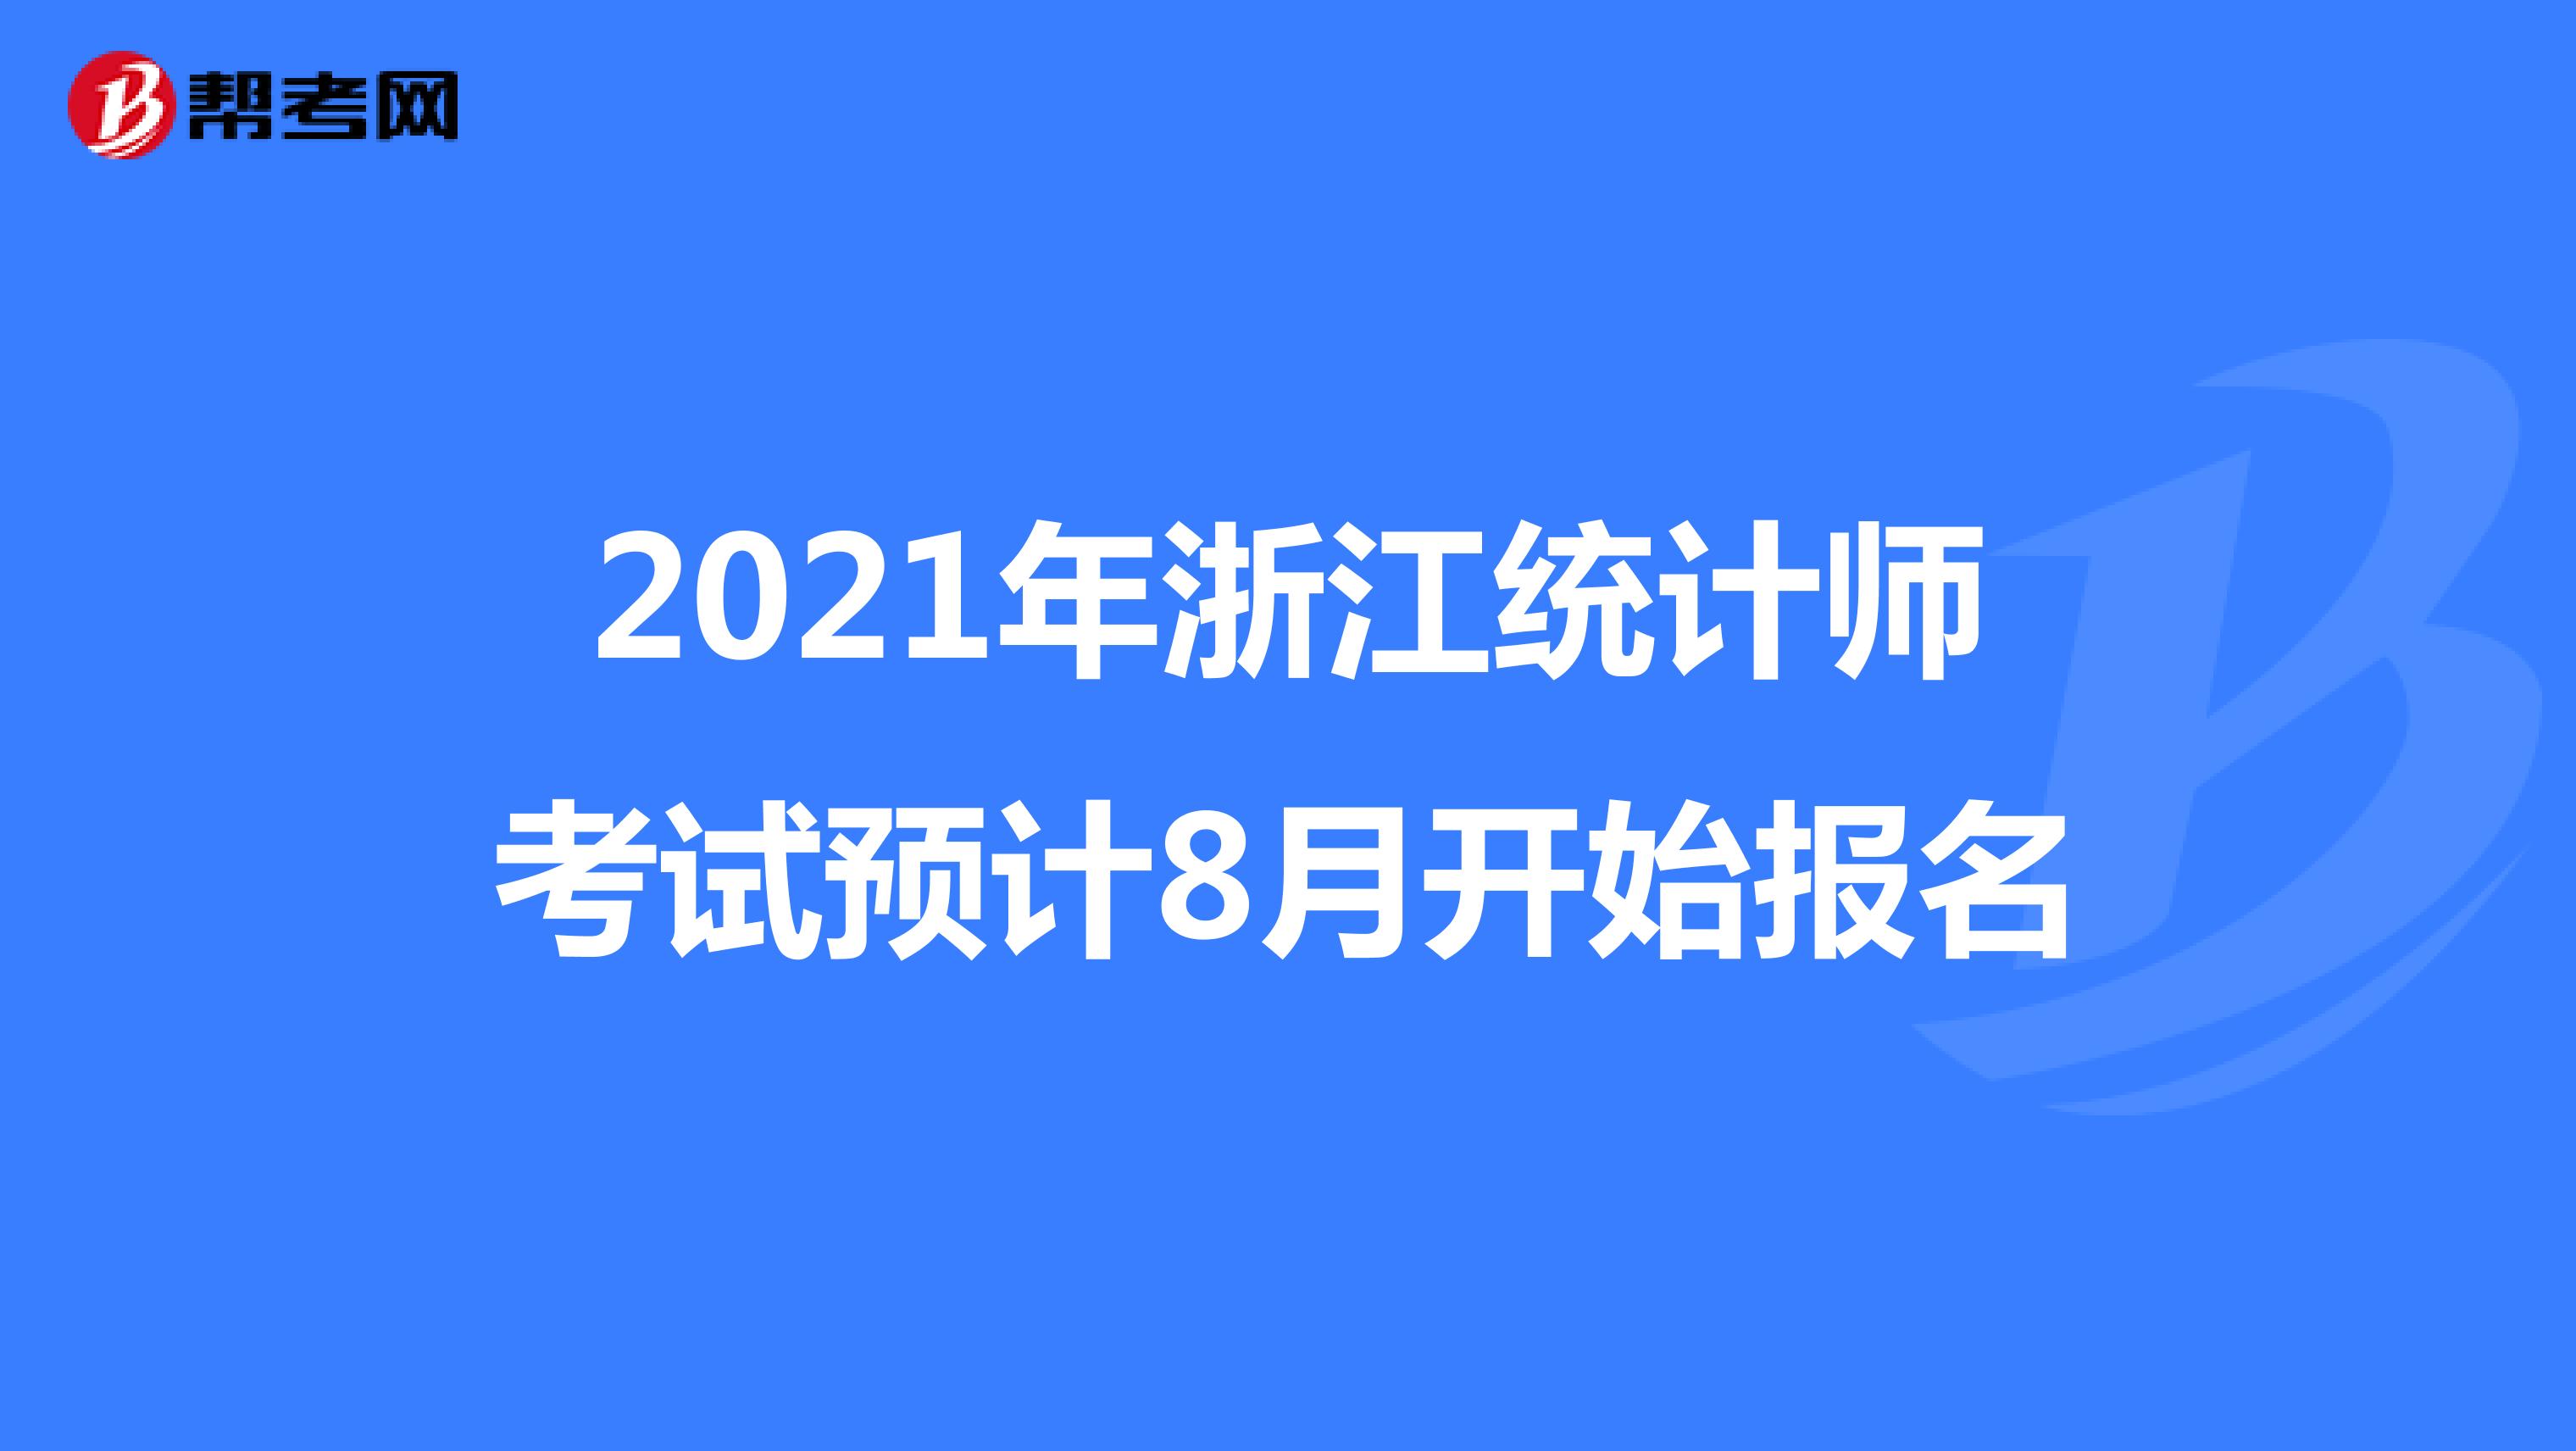 2021年浙江统计师考试预计8月开始报名